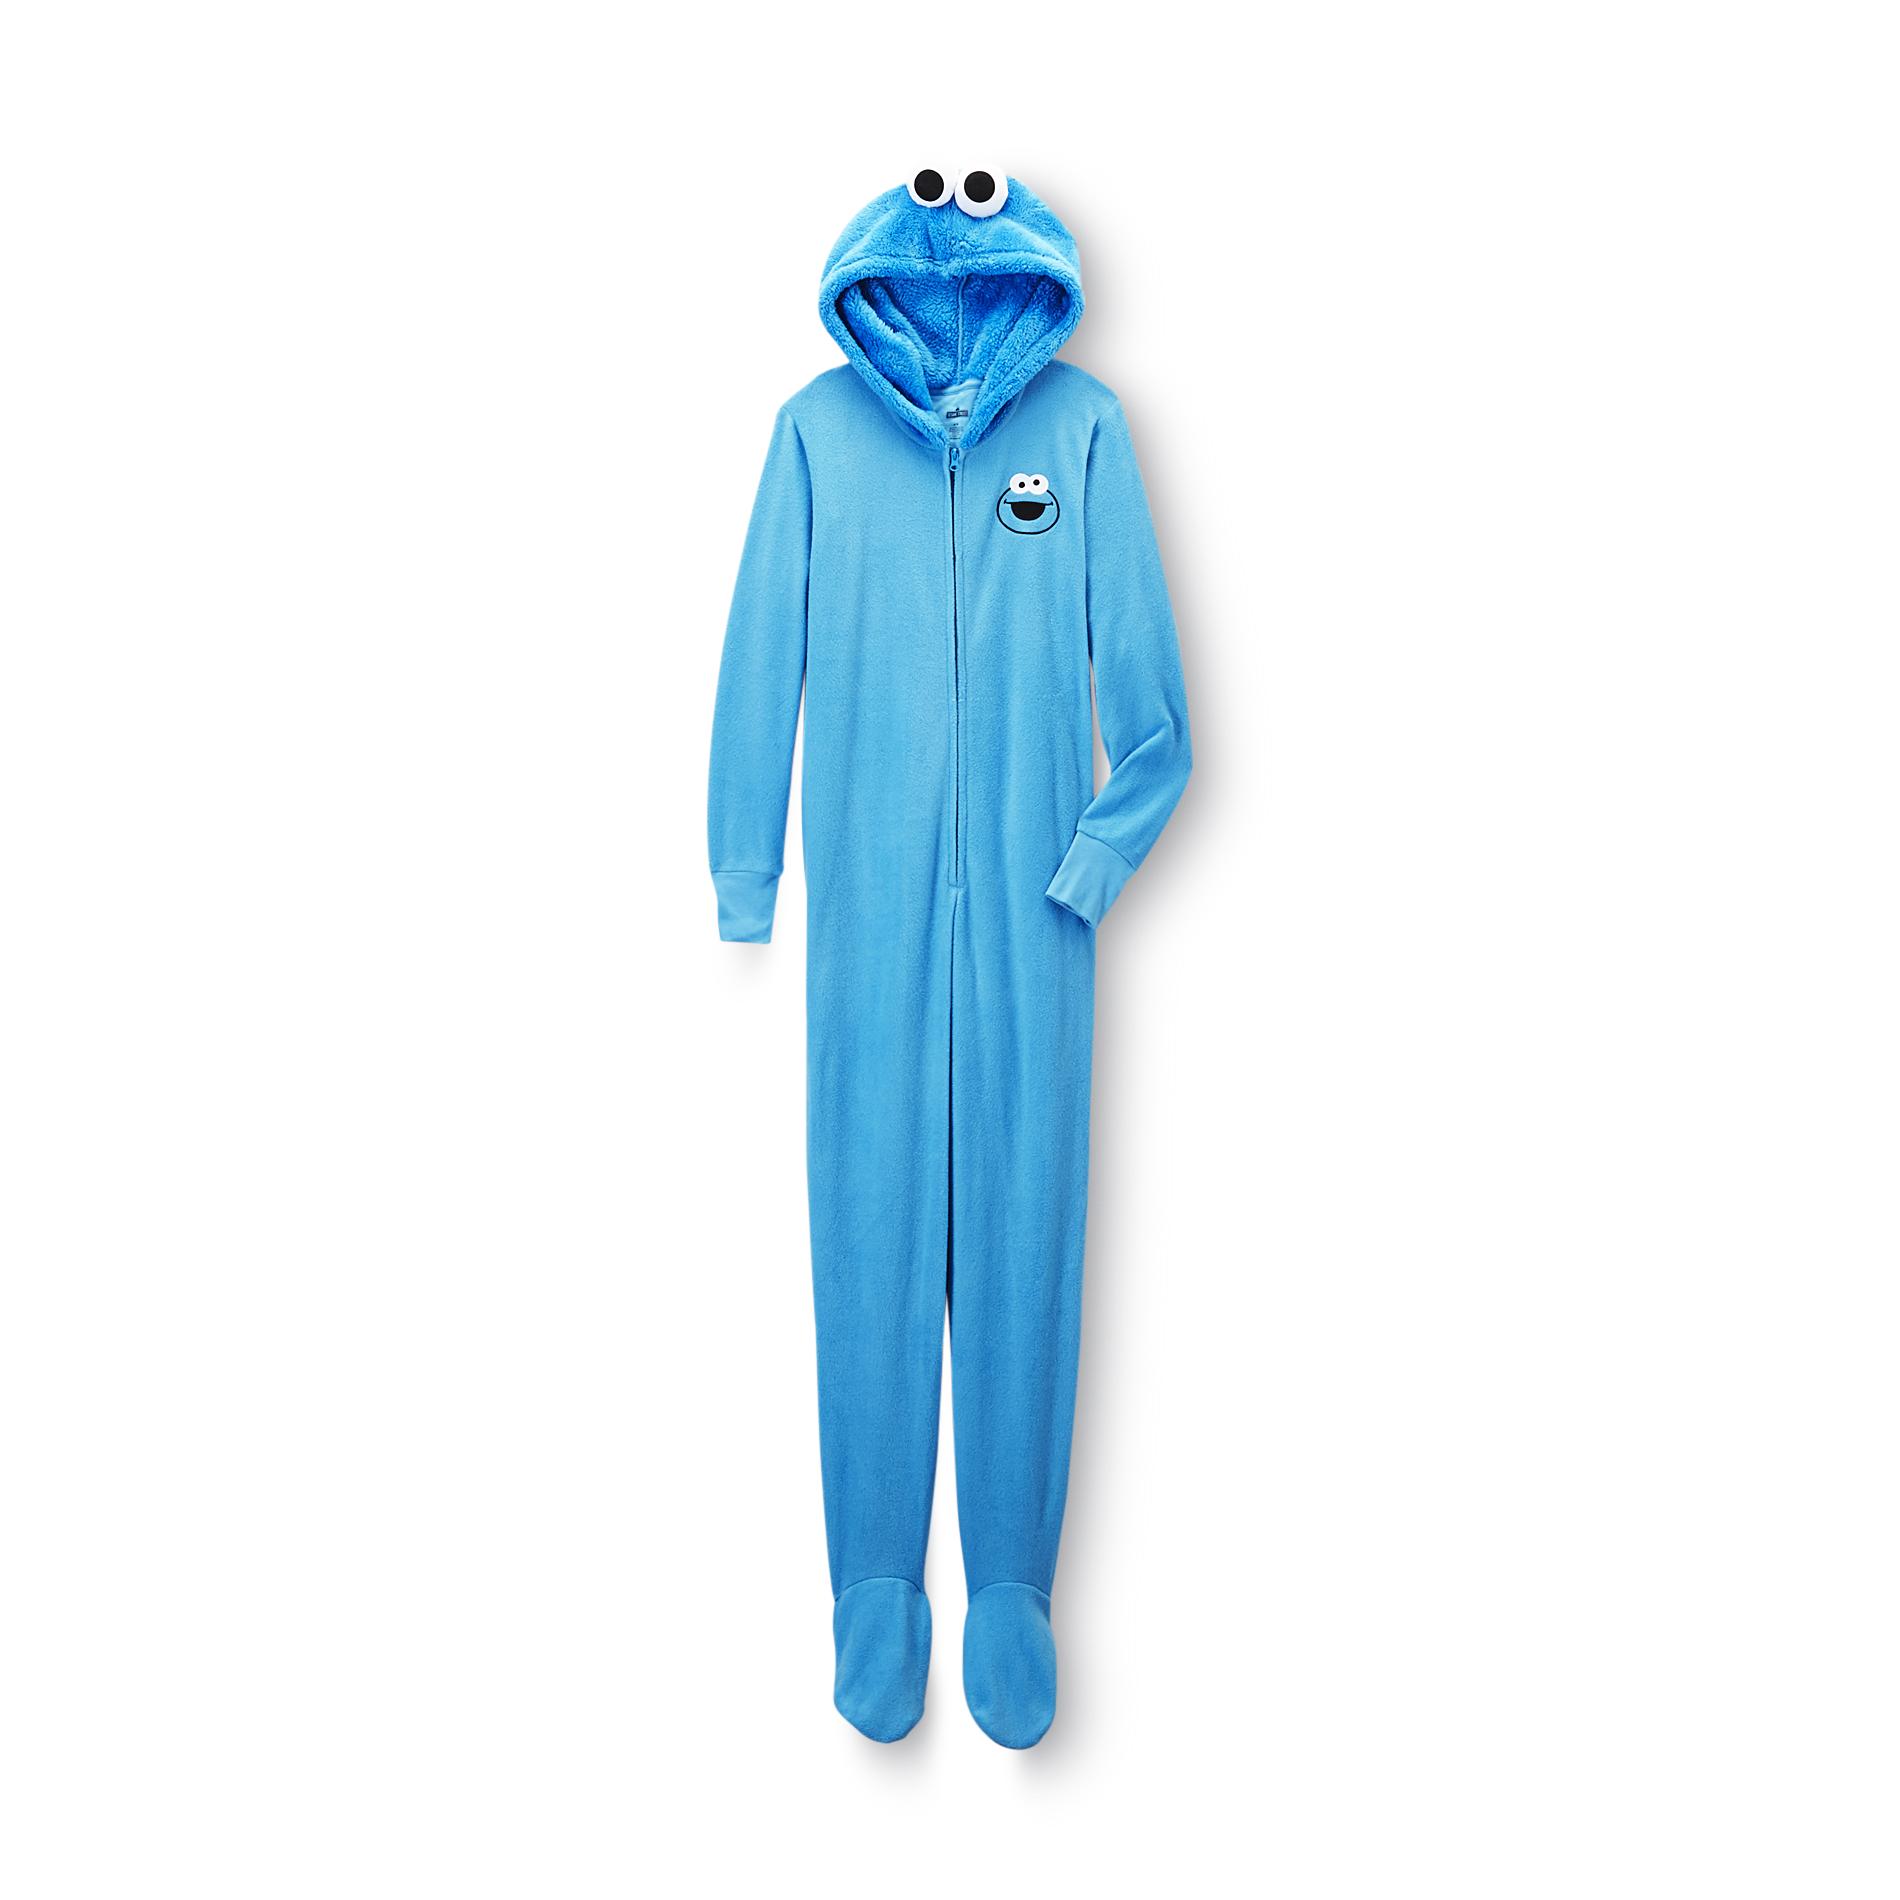 Sesame Street Women's Footed Sleeper Pajamas - Cookie Monster